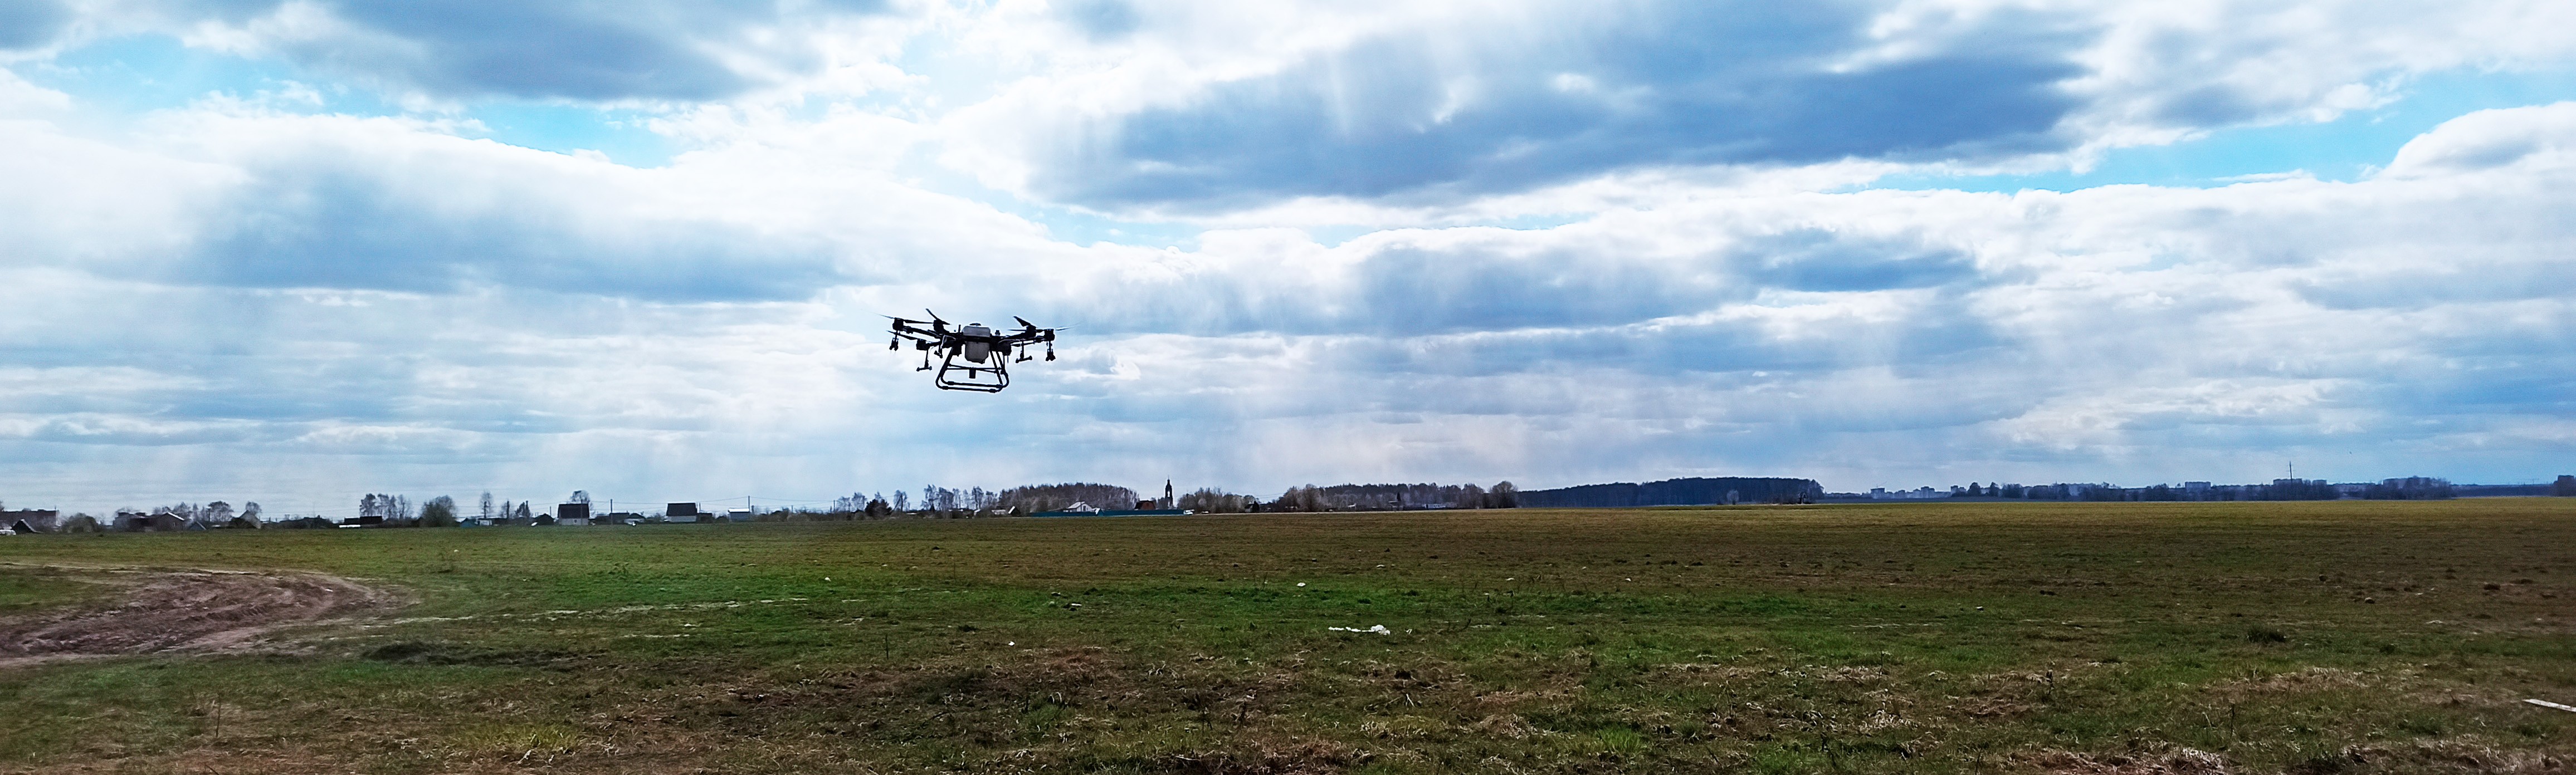 ООО «Агромир» повысил эффективность с помощью дронов DJI почти в 3 раза - Точное земледелие